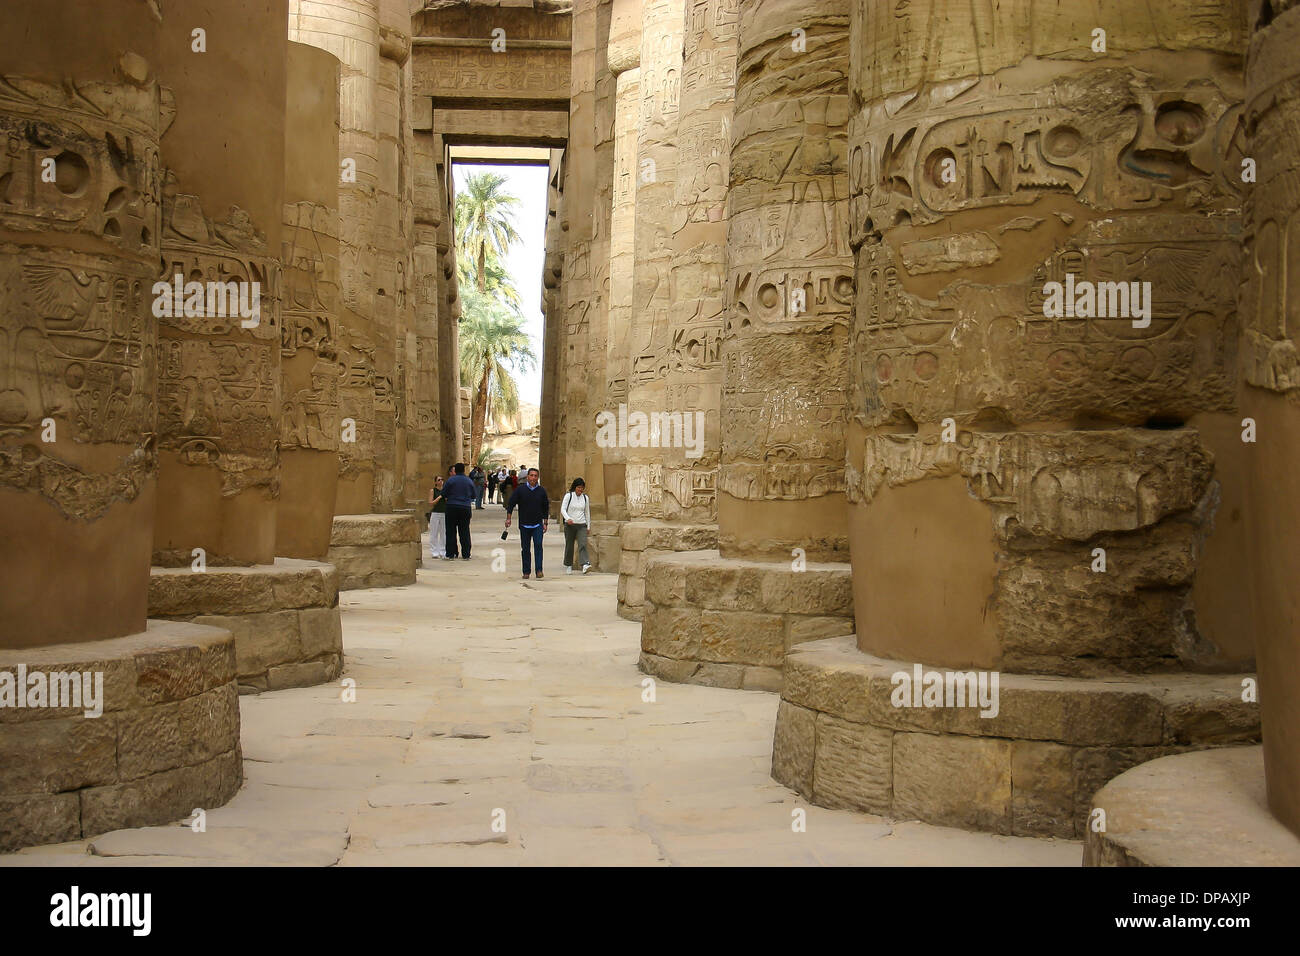 Hieroglyphics on columns of Karnak Temple in Luxor, Egypt. Stock Photo